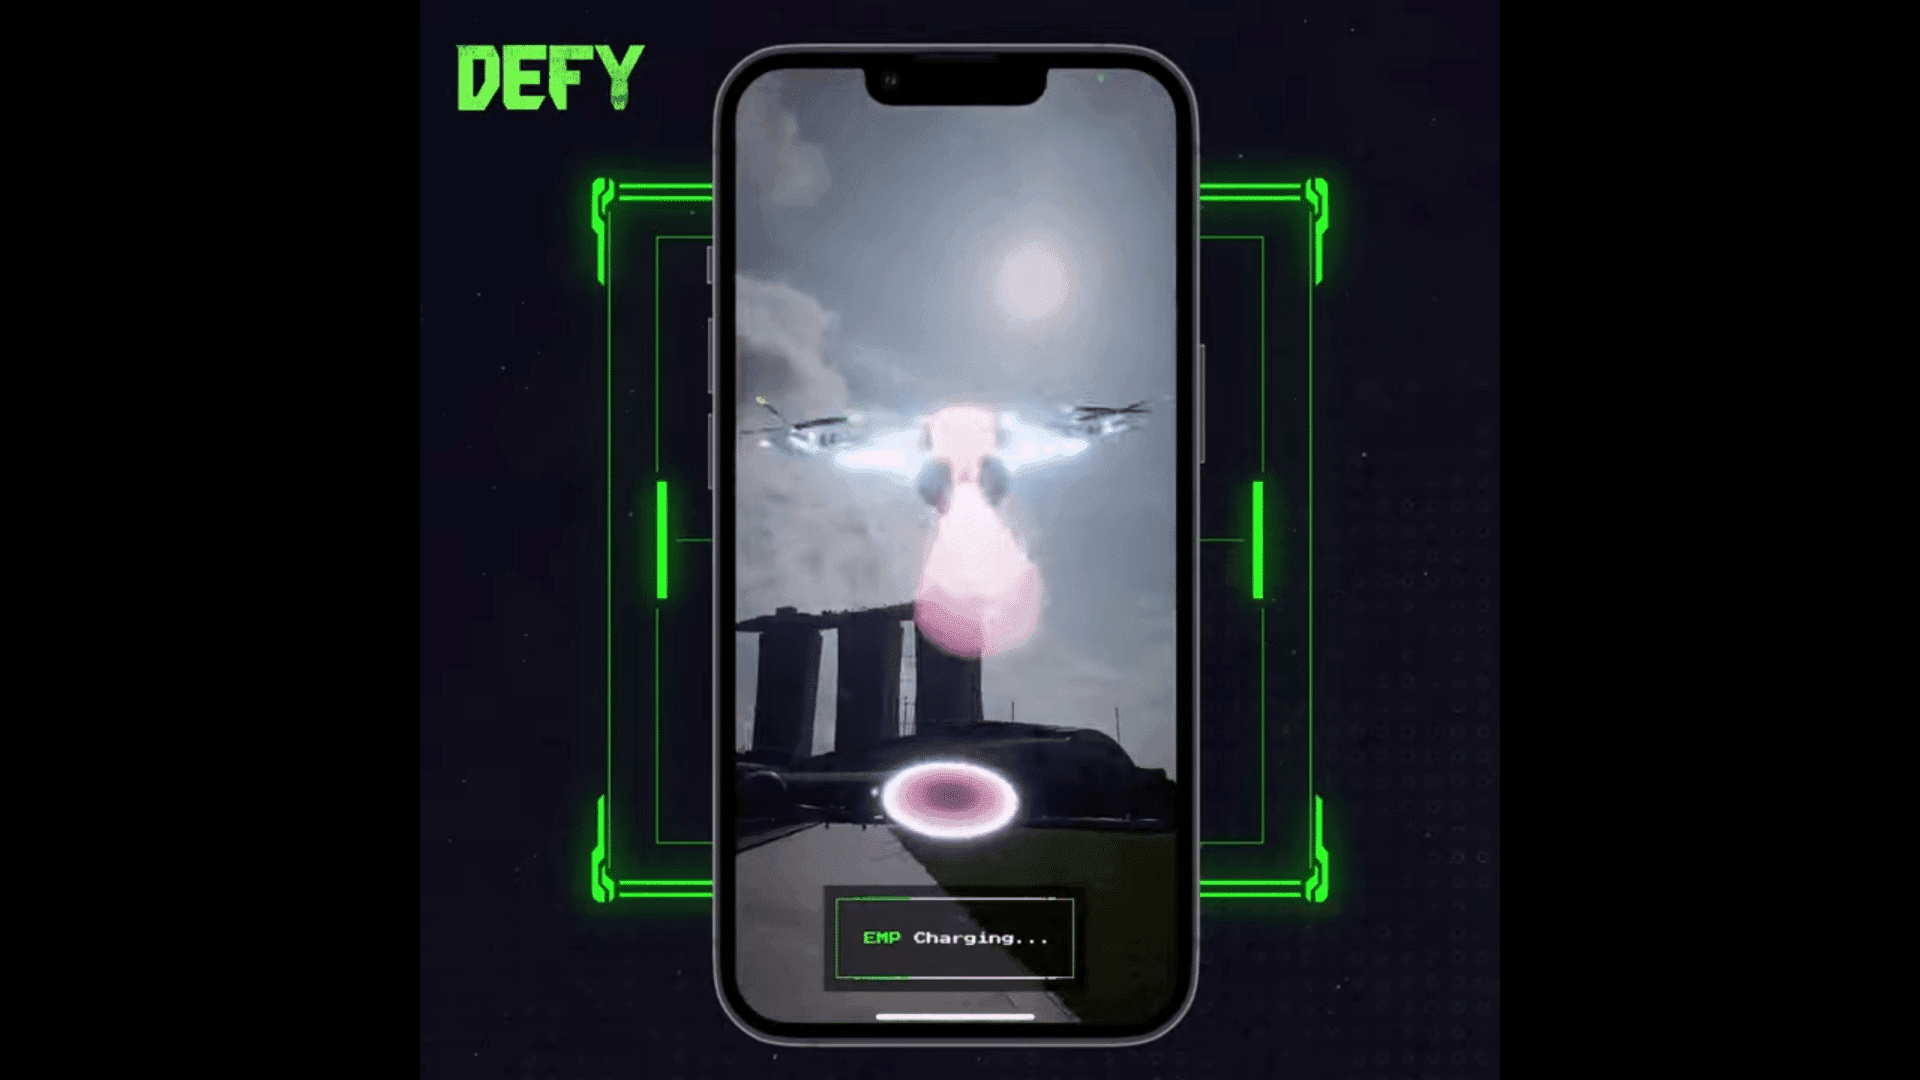 DEFY est un jeu mobile qui combine des éléments des mondes virtuel et physique pour offrir une expérience métaverse immersive.